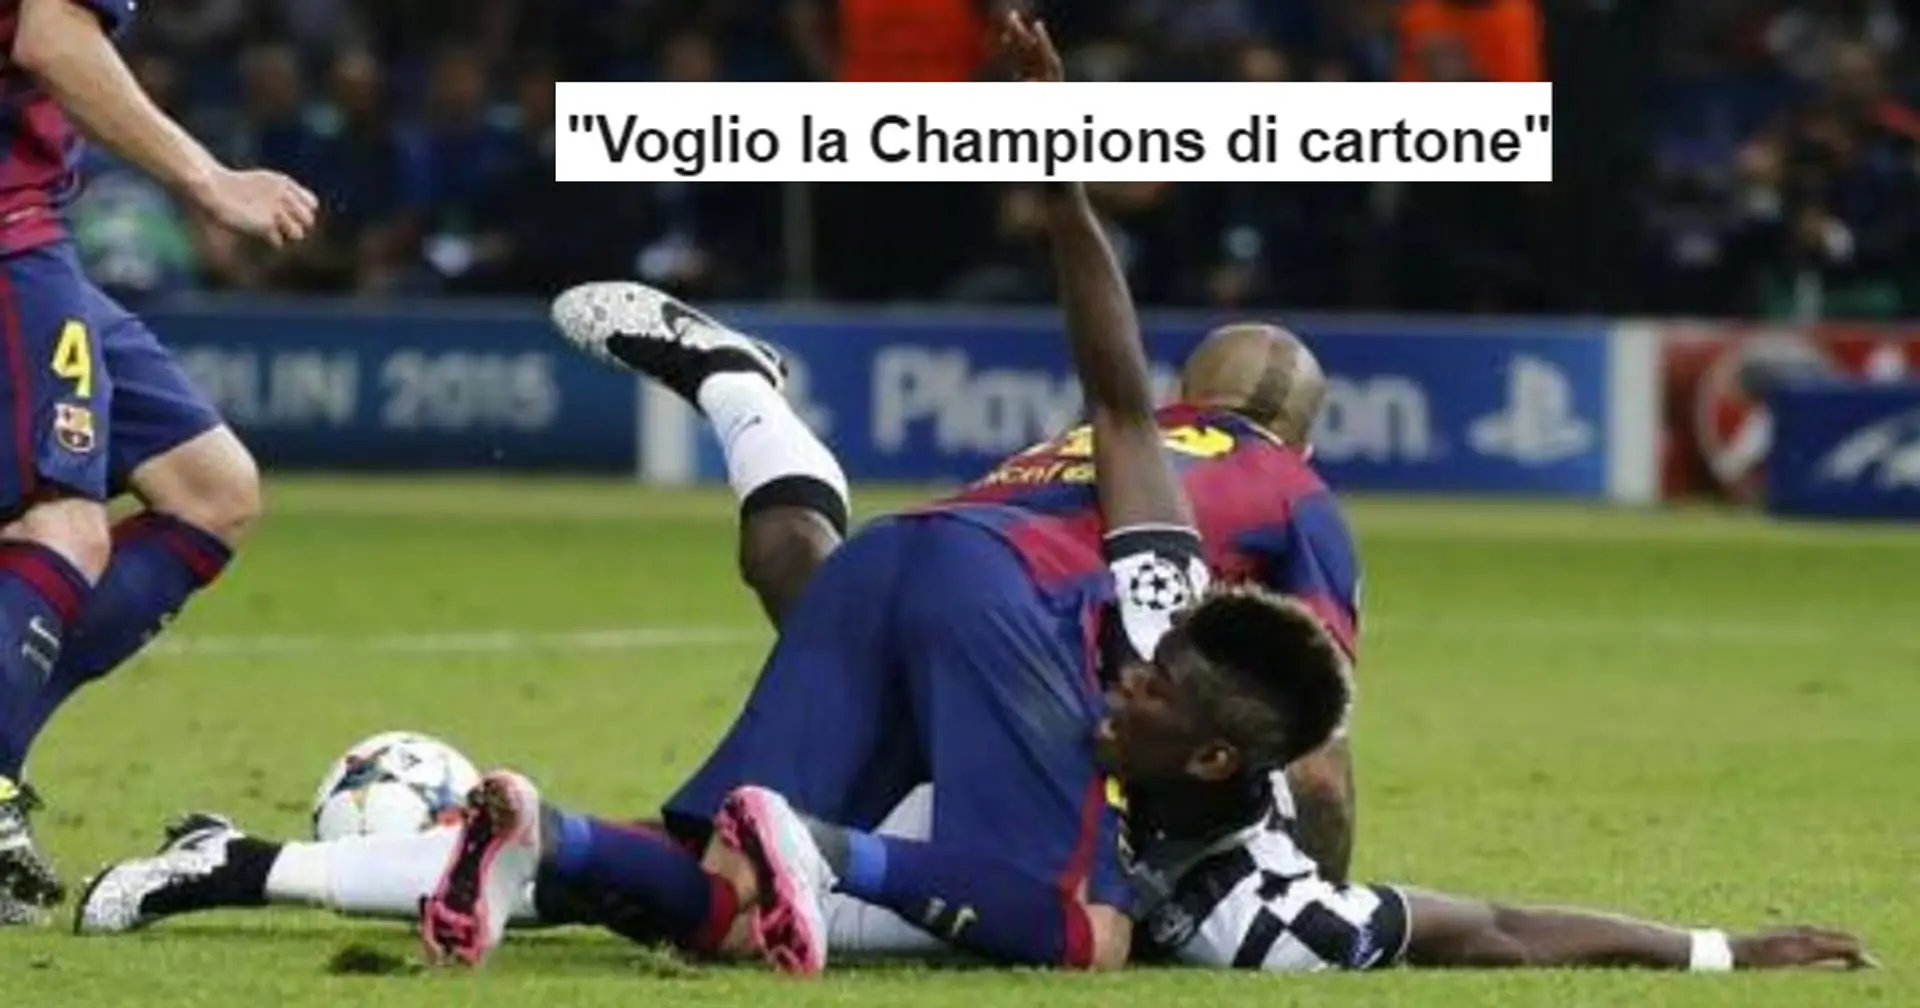 "Voglio la Champions di cartone", l'inchiesta sul Barcellona scatena la rabbia dei tifosi della Juventus